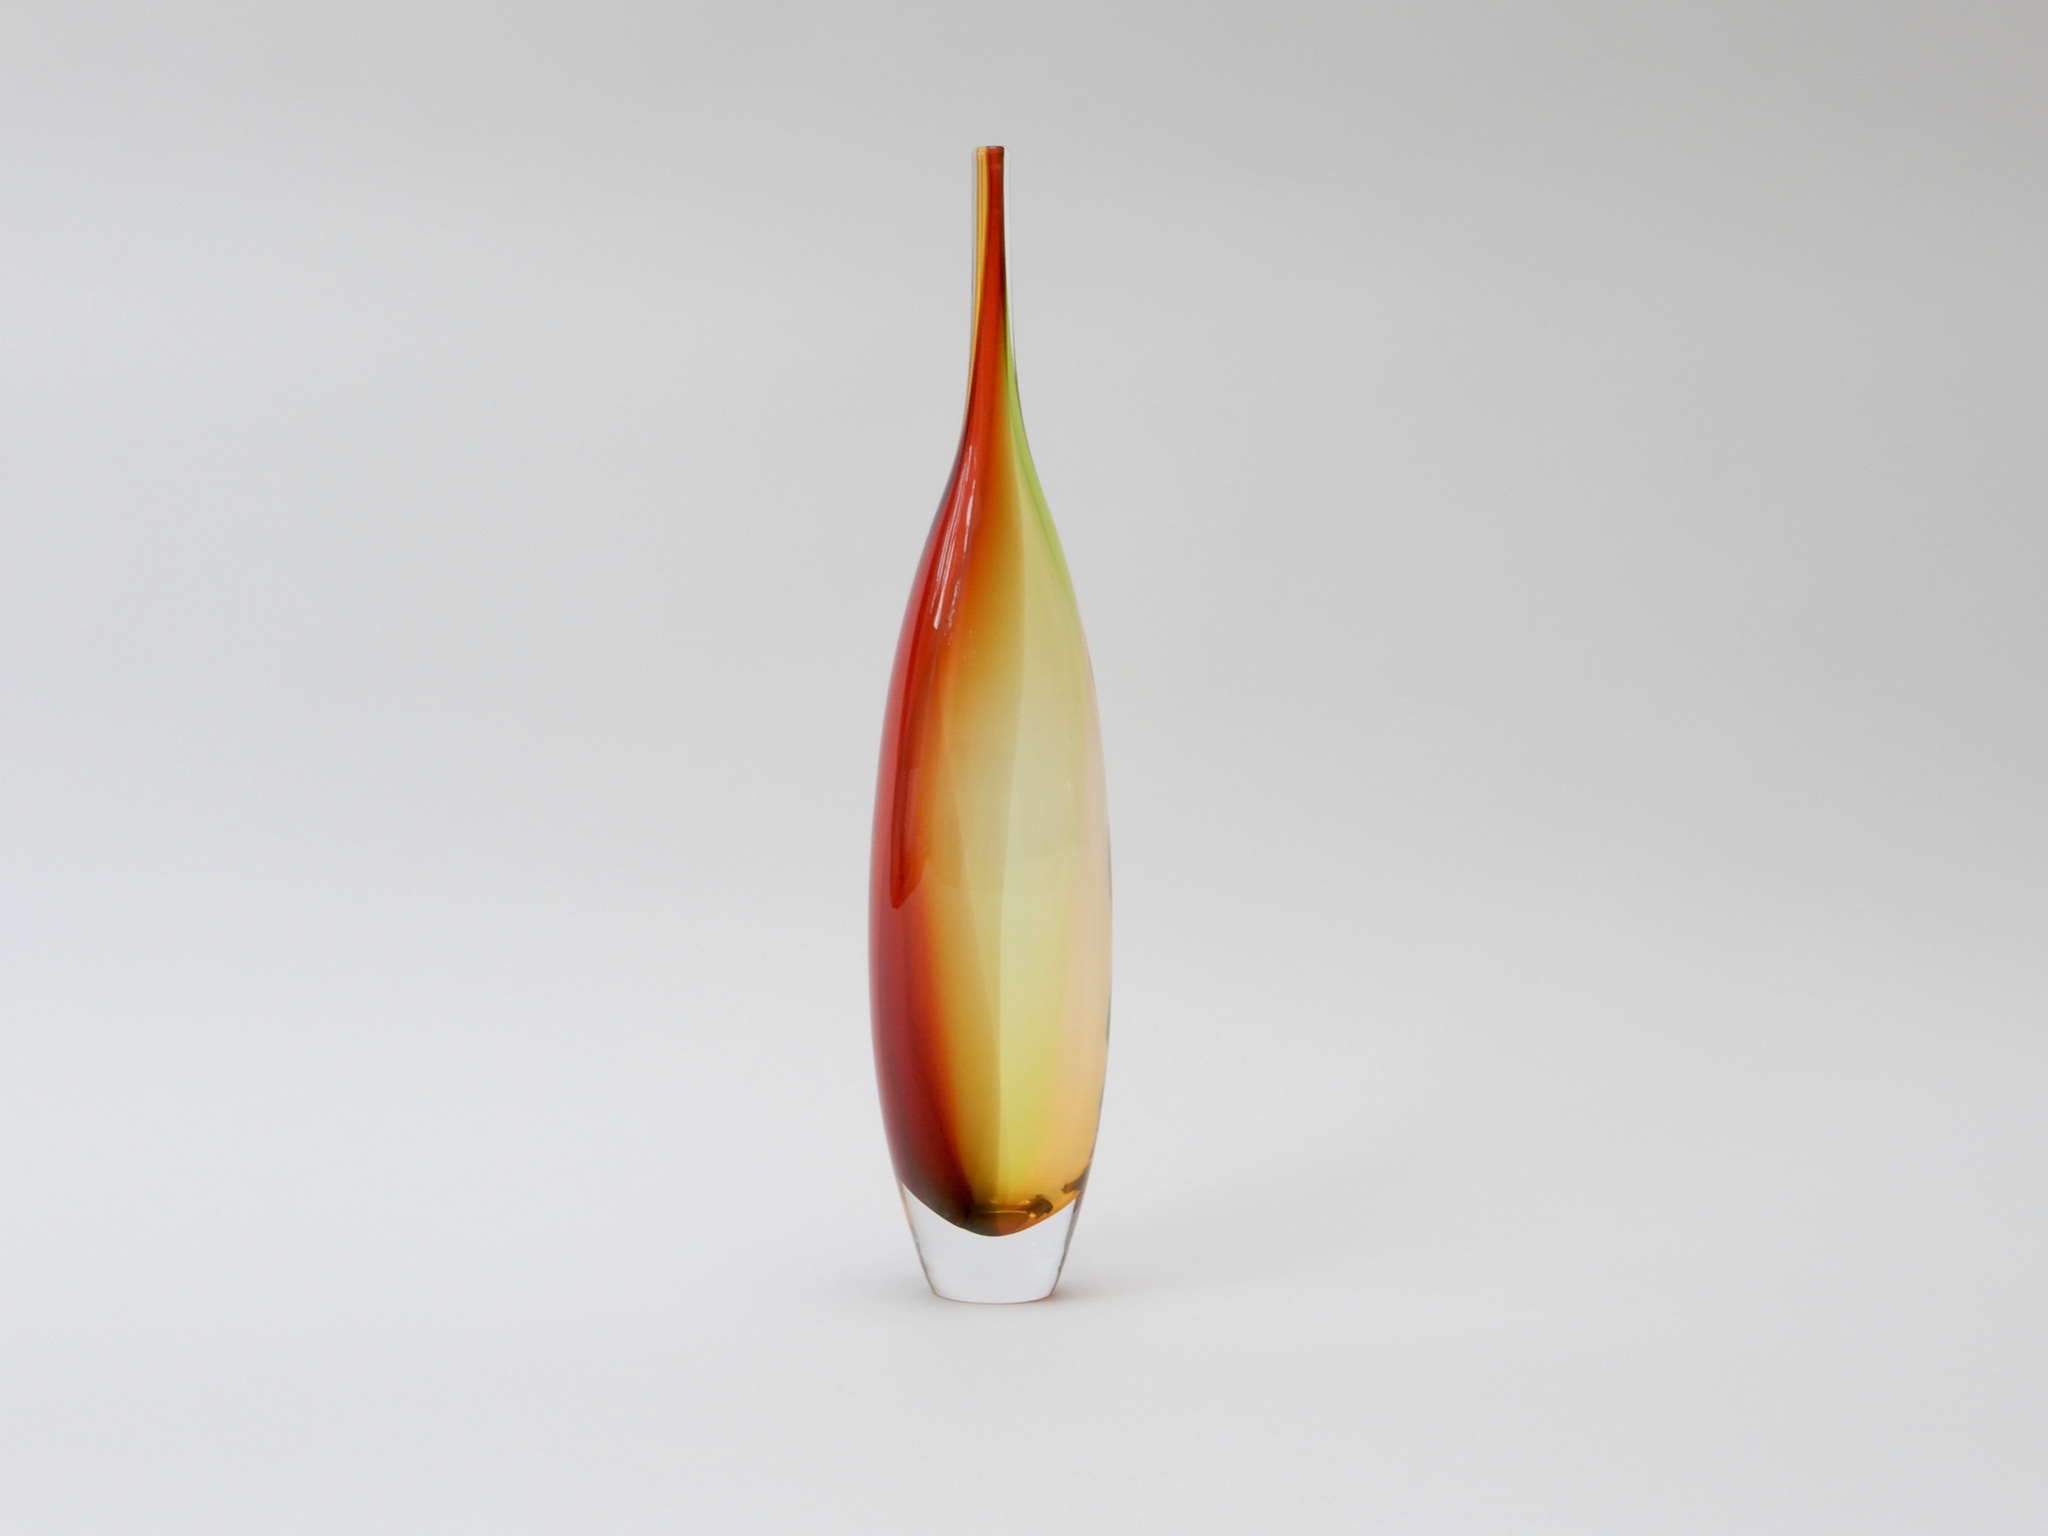 Sold - Kjell Engman Orange Vase